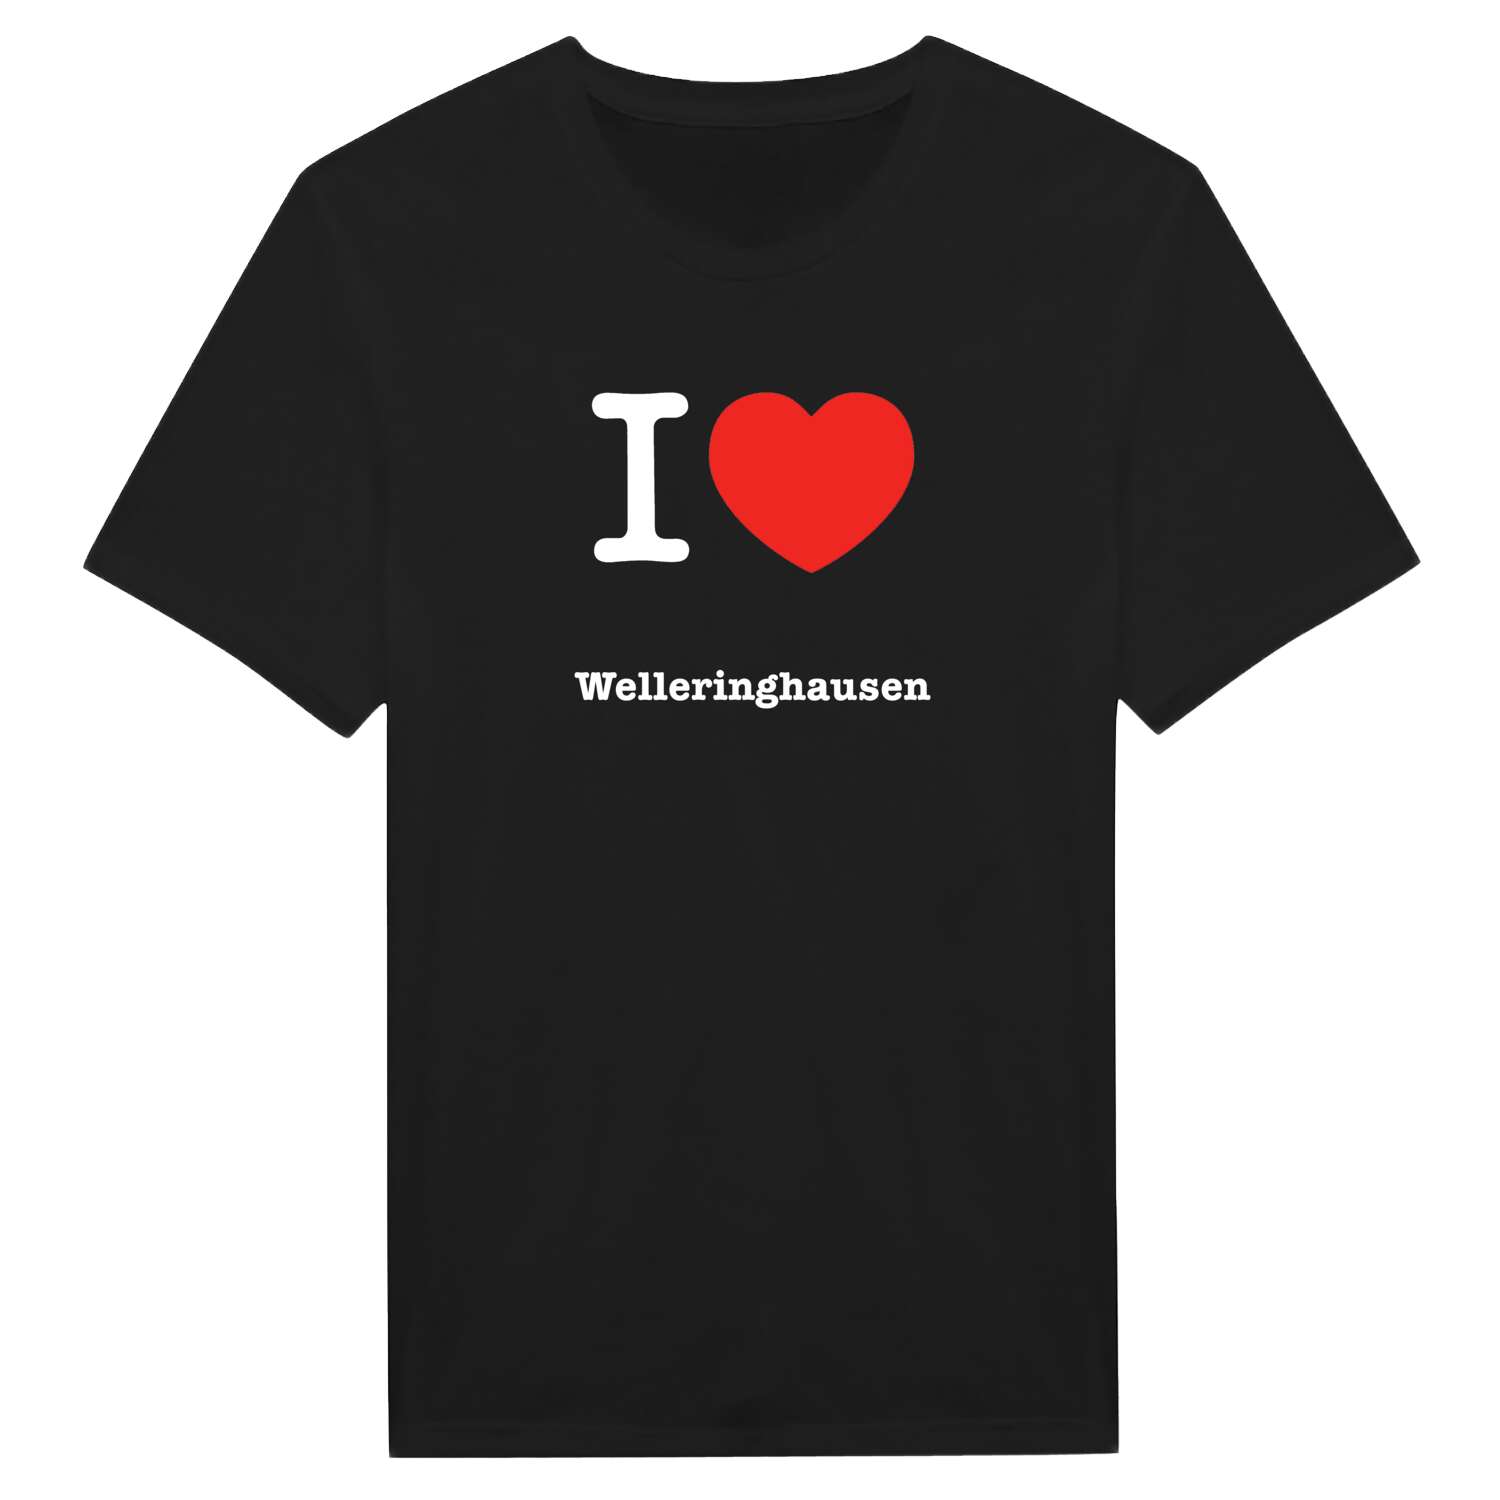 Welleringhausen T-Shirt »I love«